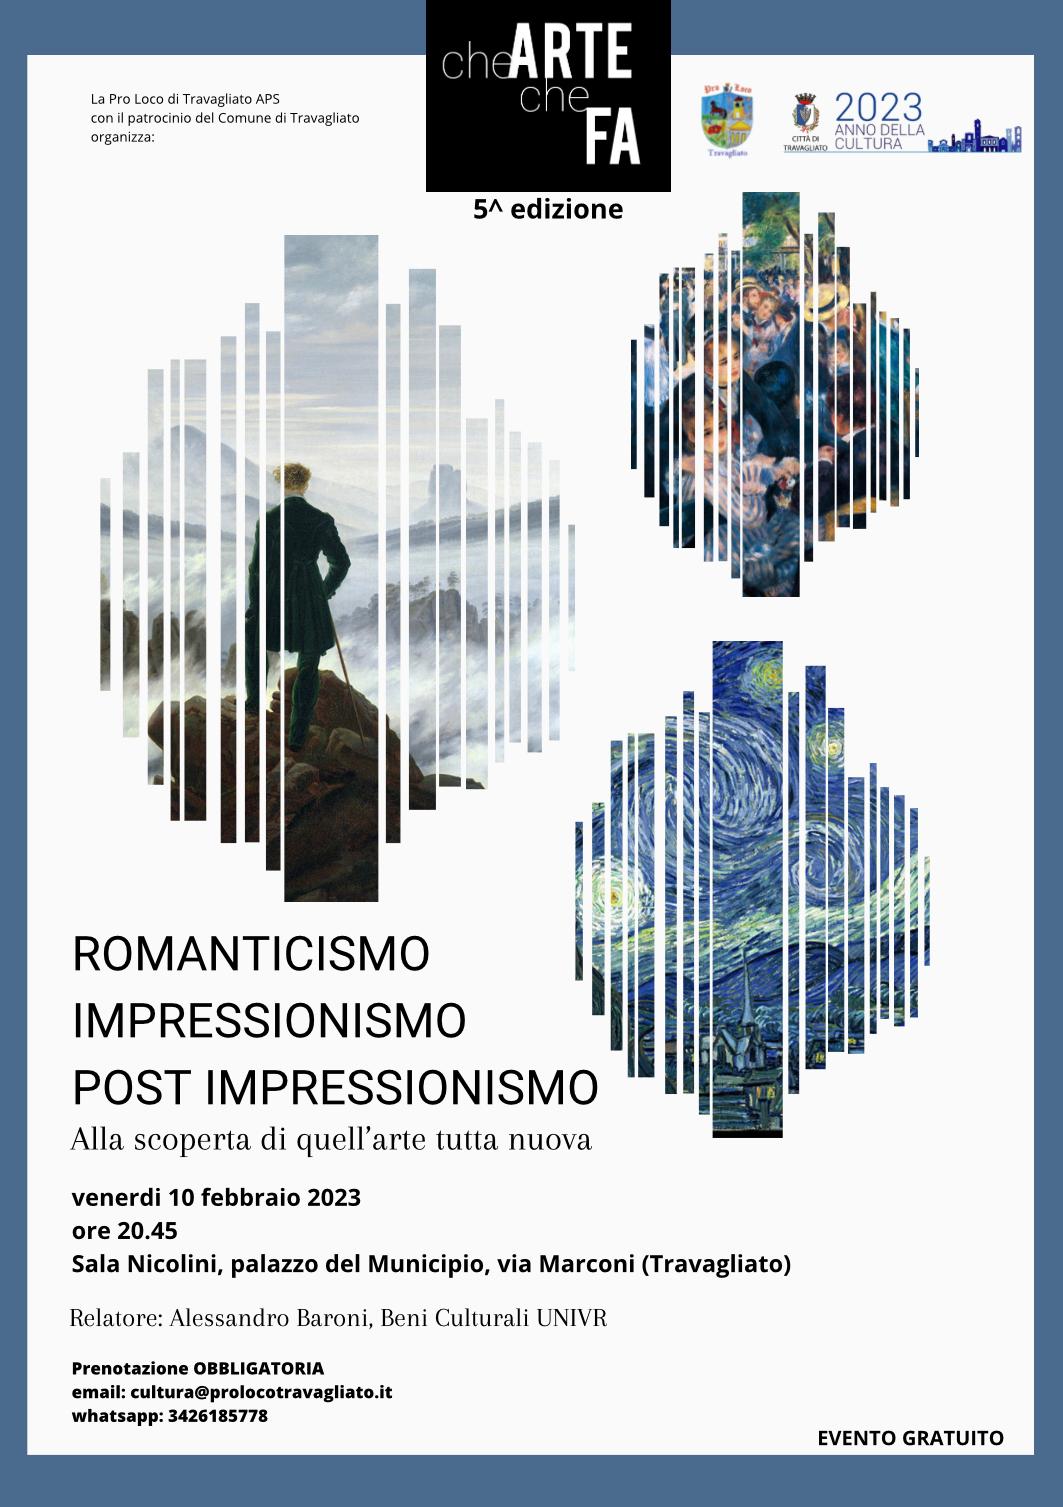 Romanticismo, Impressionismo, Post Impressionismo